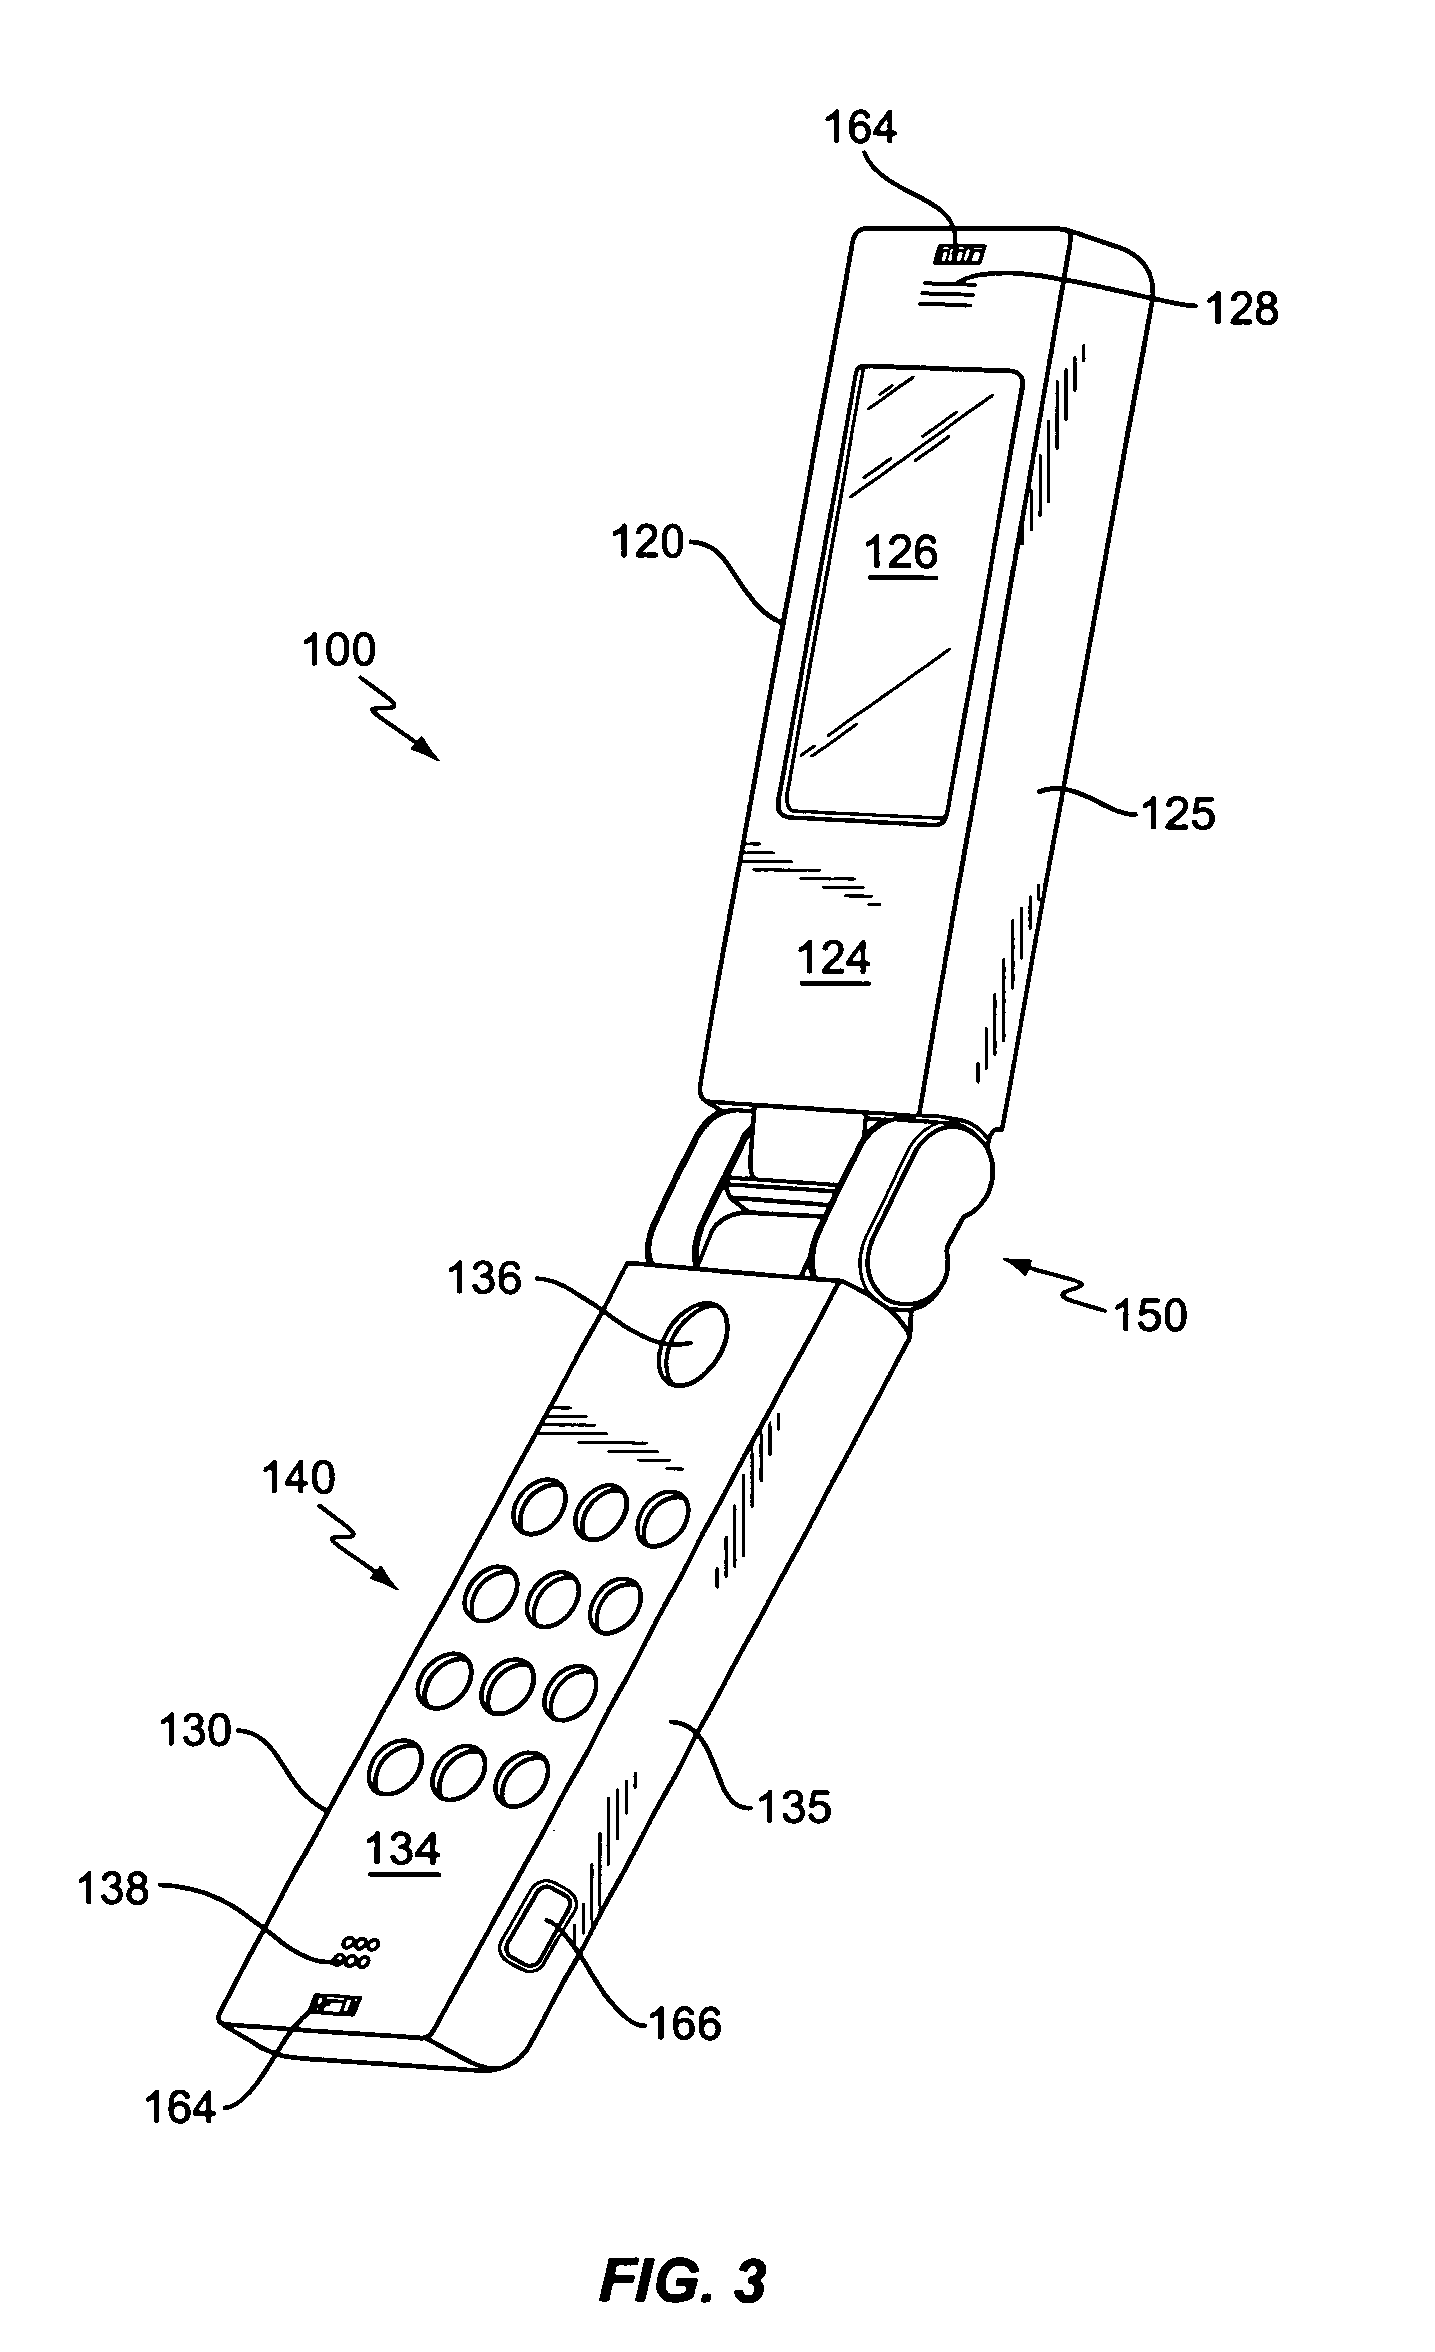 Mechanism for ergonomic integration of a digital camera into a mobile phone